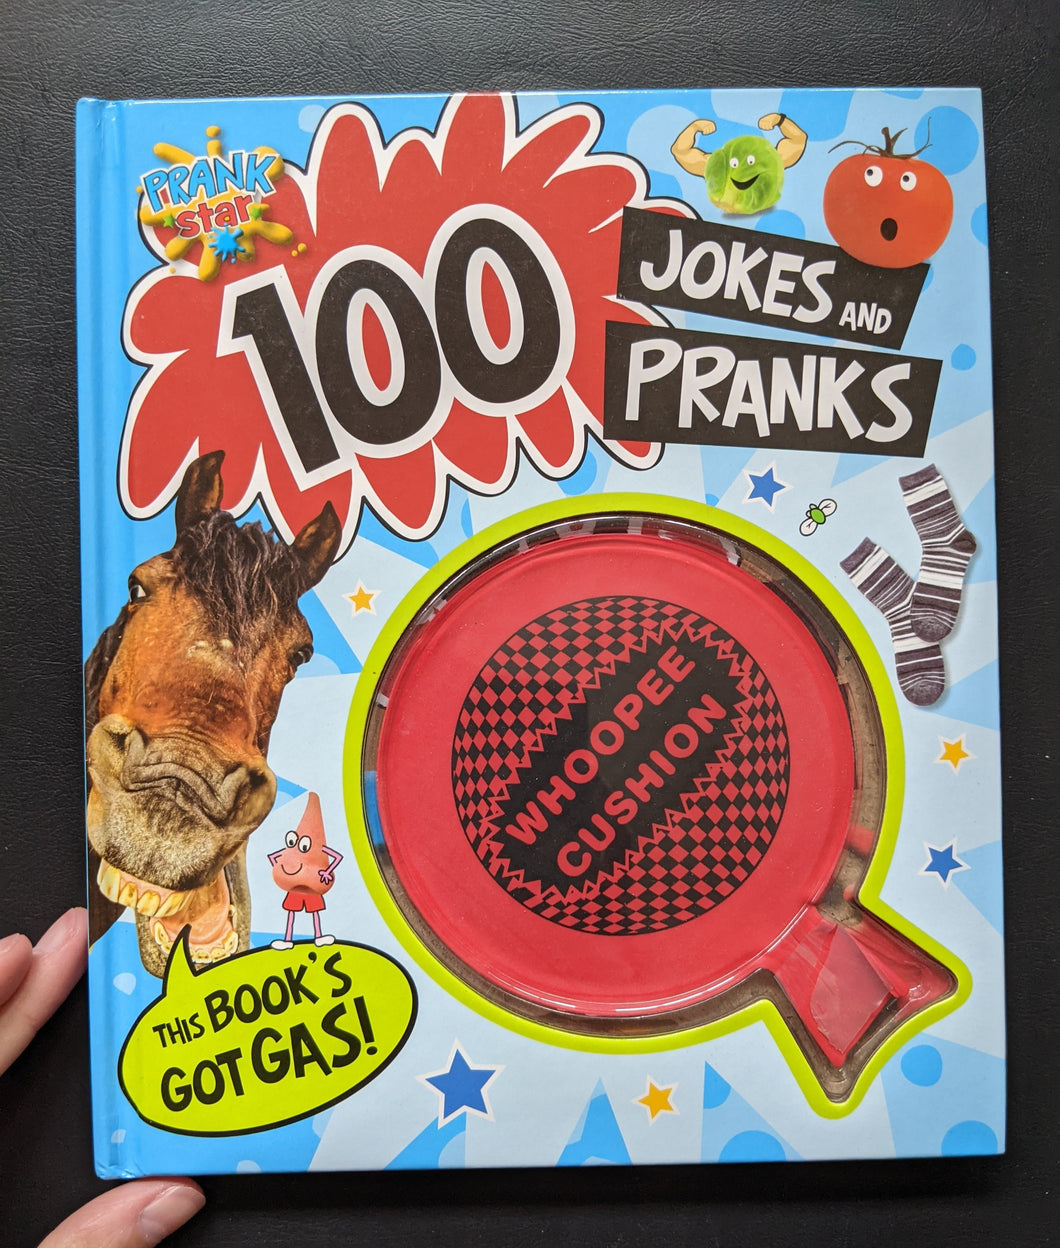 Prank Star: 100 Jokes and Pranks